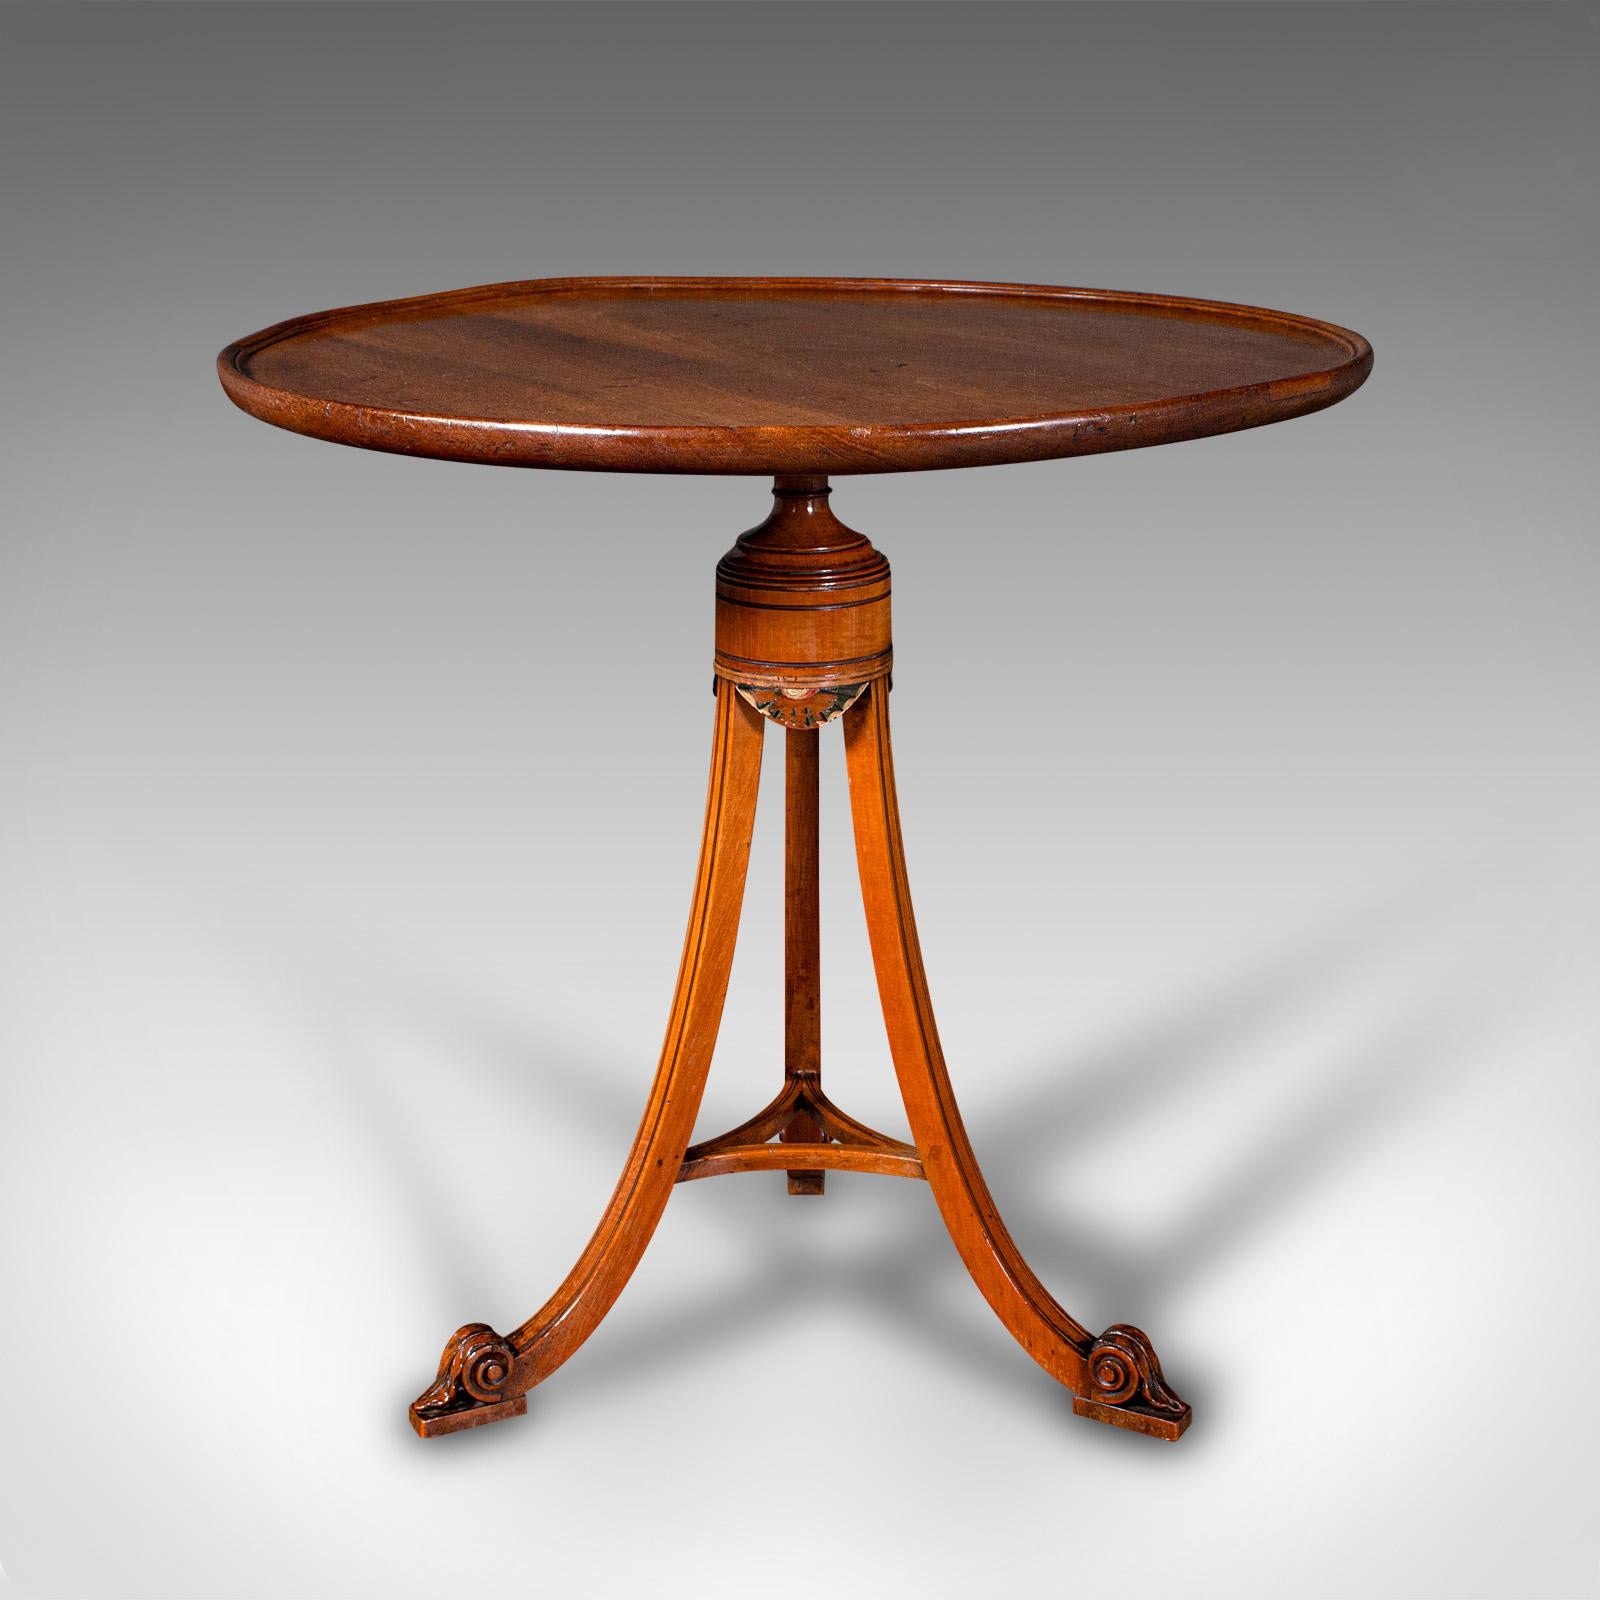 Il s'agit d'une petite table à vin ancienne. Table de lampe tripode anglaise en acajou et en bois de satin, datant de la période Regency et plus tard, vers 1820.

Une exécution gracieuse et une couleur attrayante pour le regard
Présente une patine